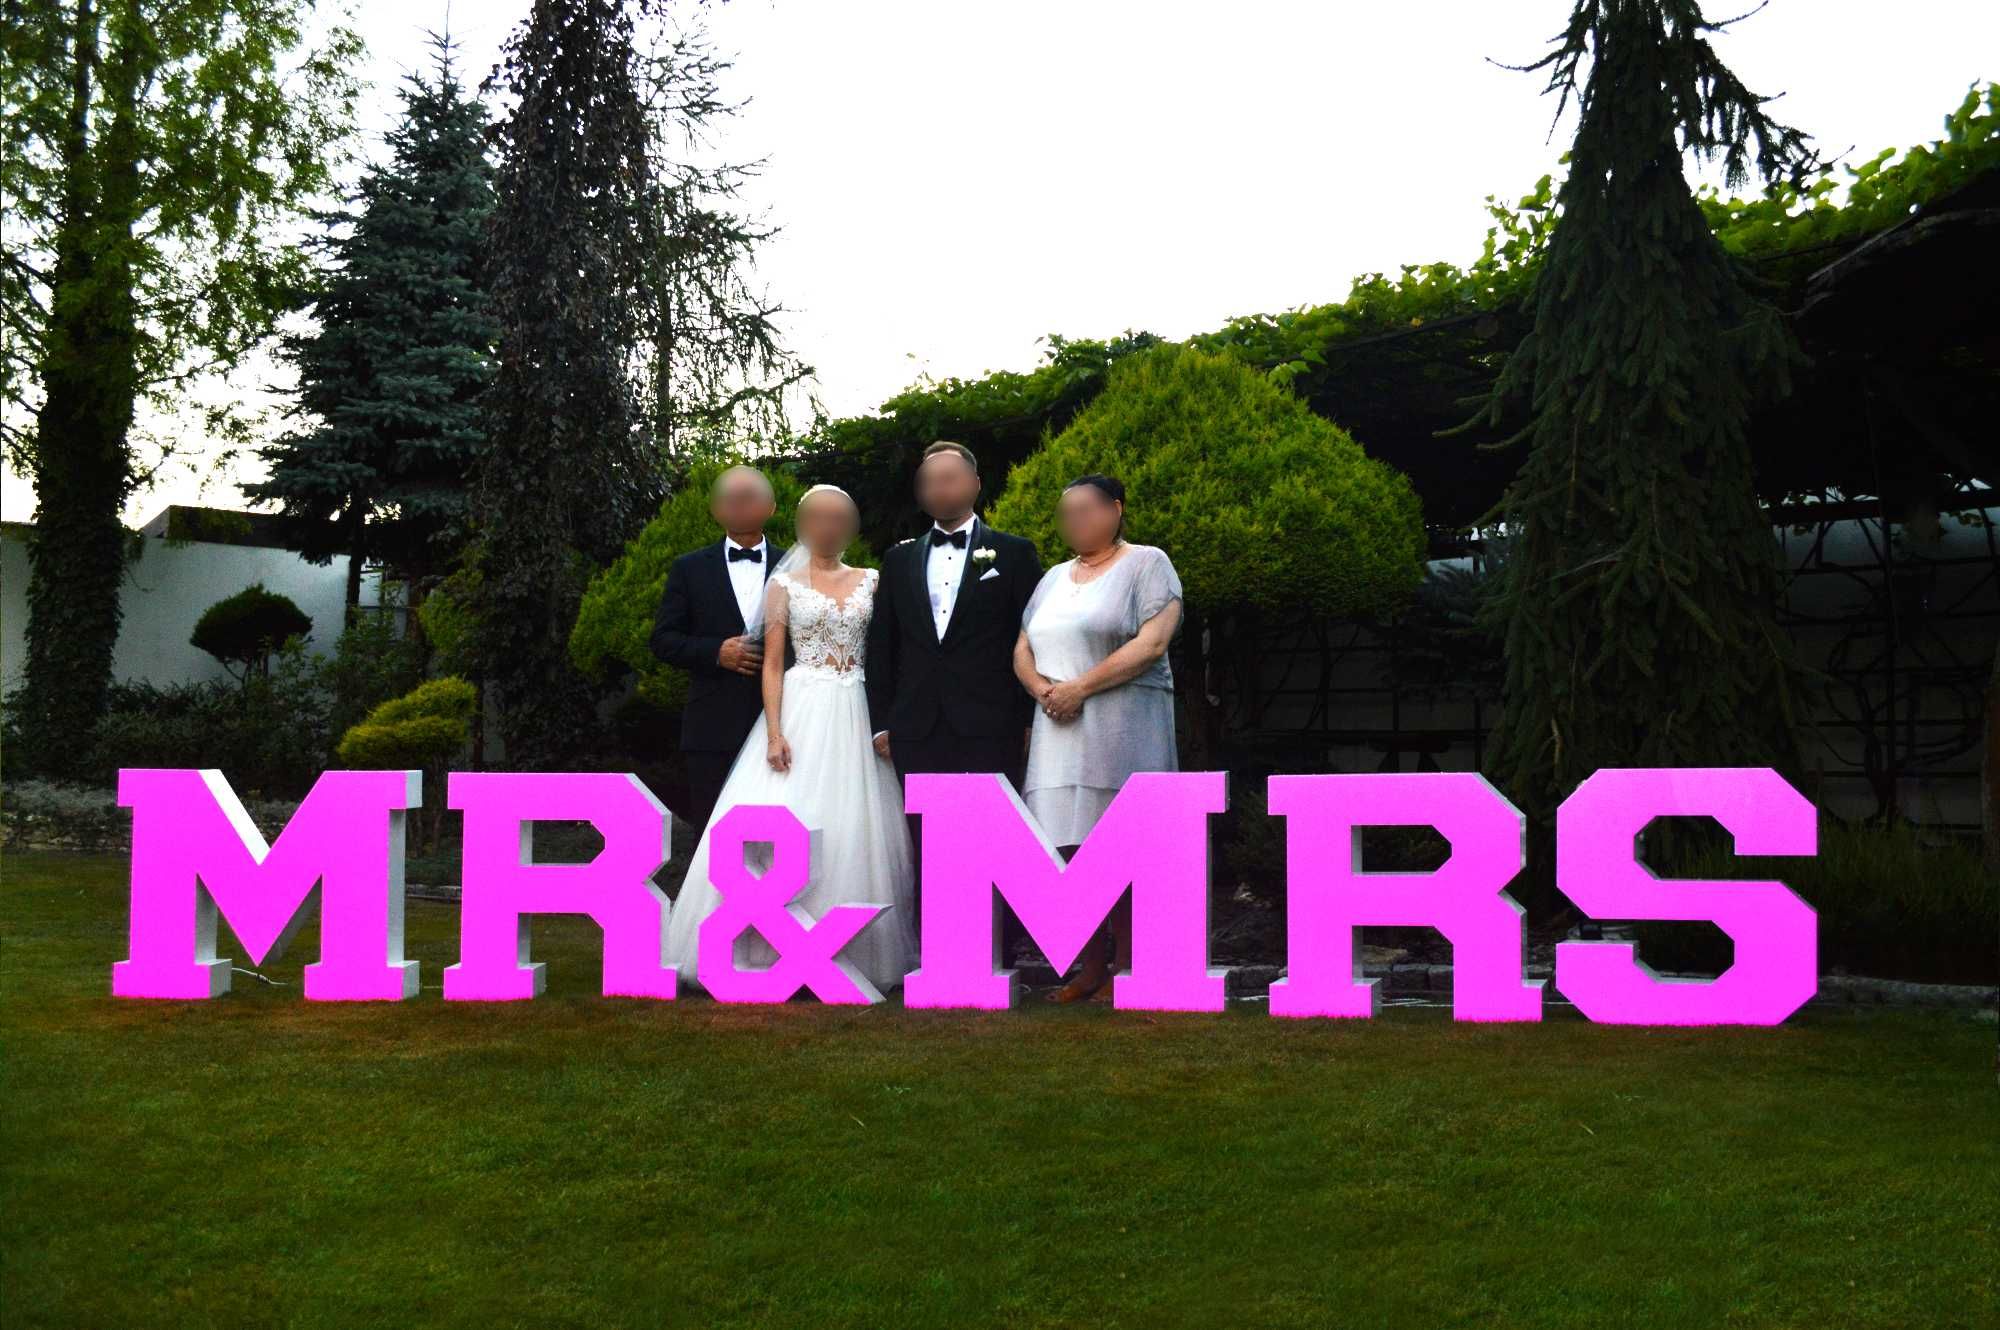 Sprzedam podświetlany napis MR&MRS (LED) - idealna dekoracja na wesele